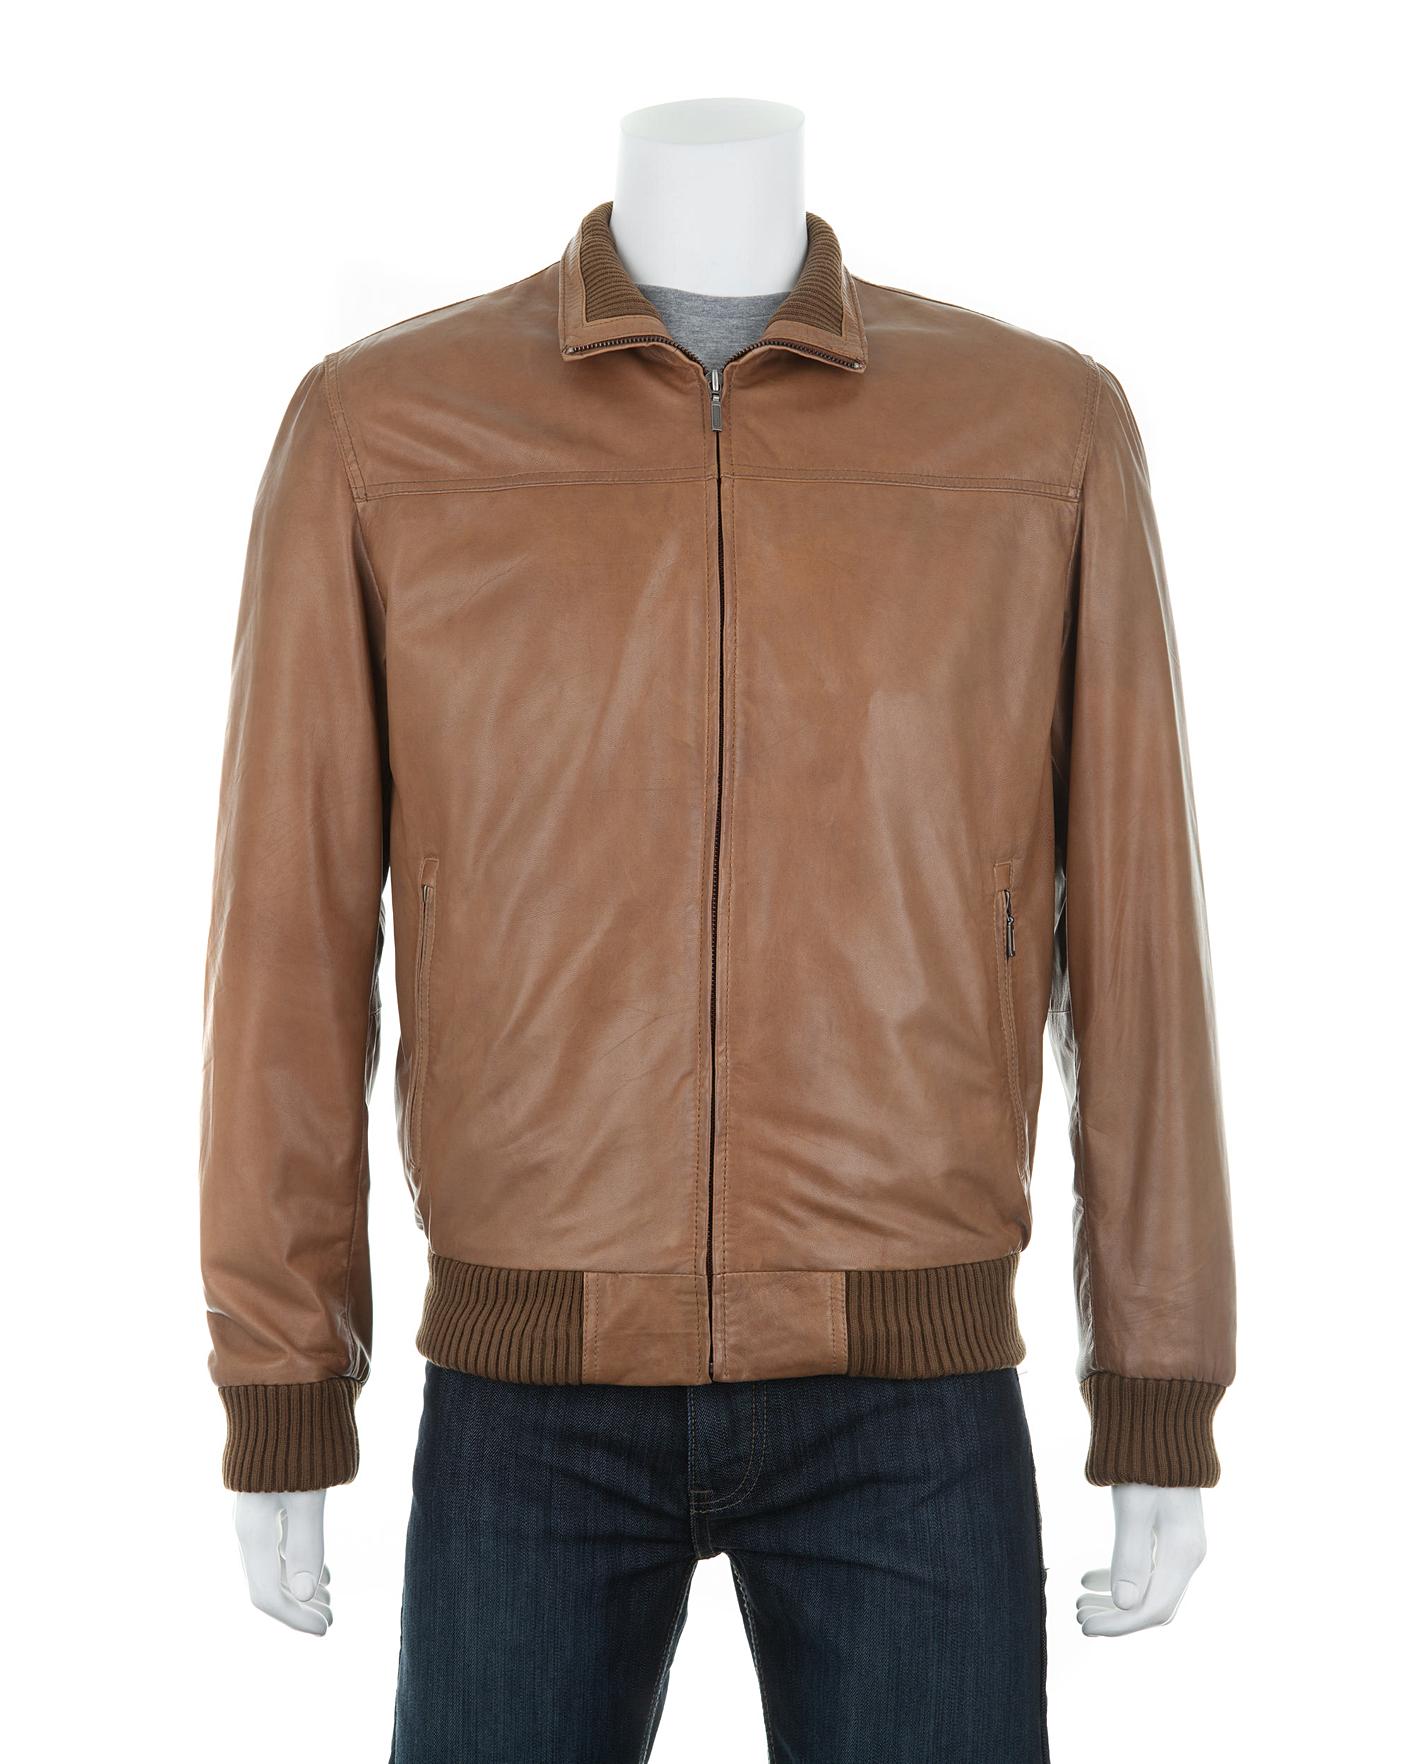 woodland leather jacket price